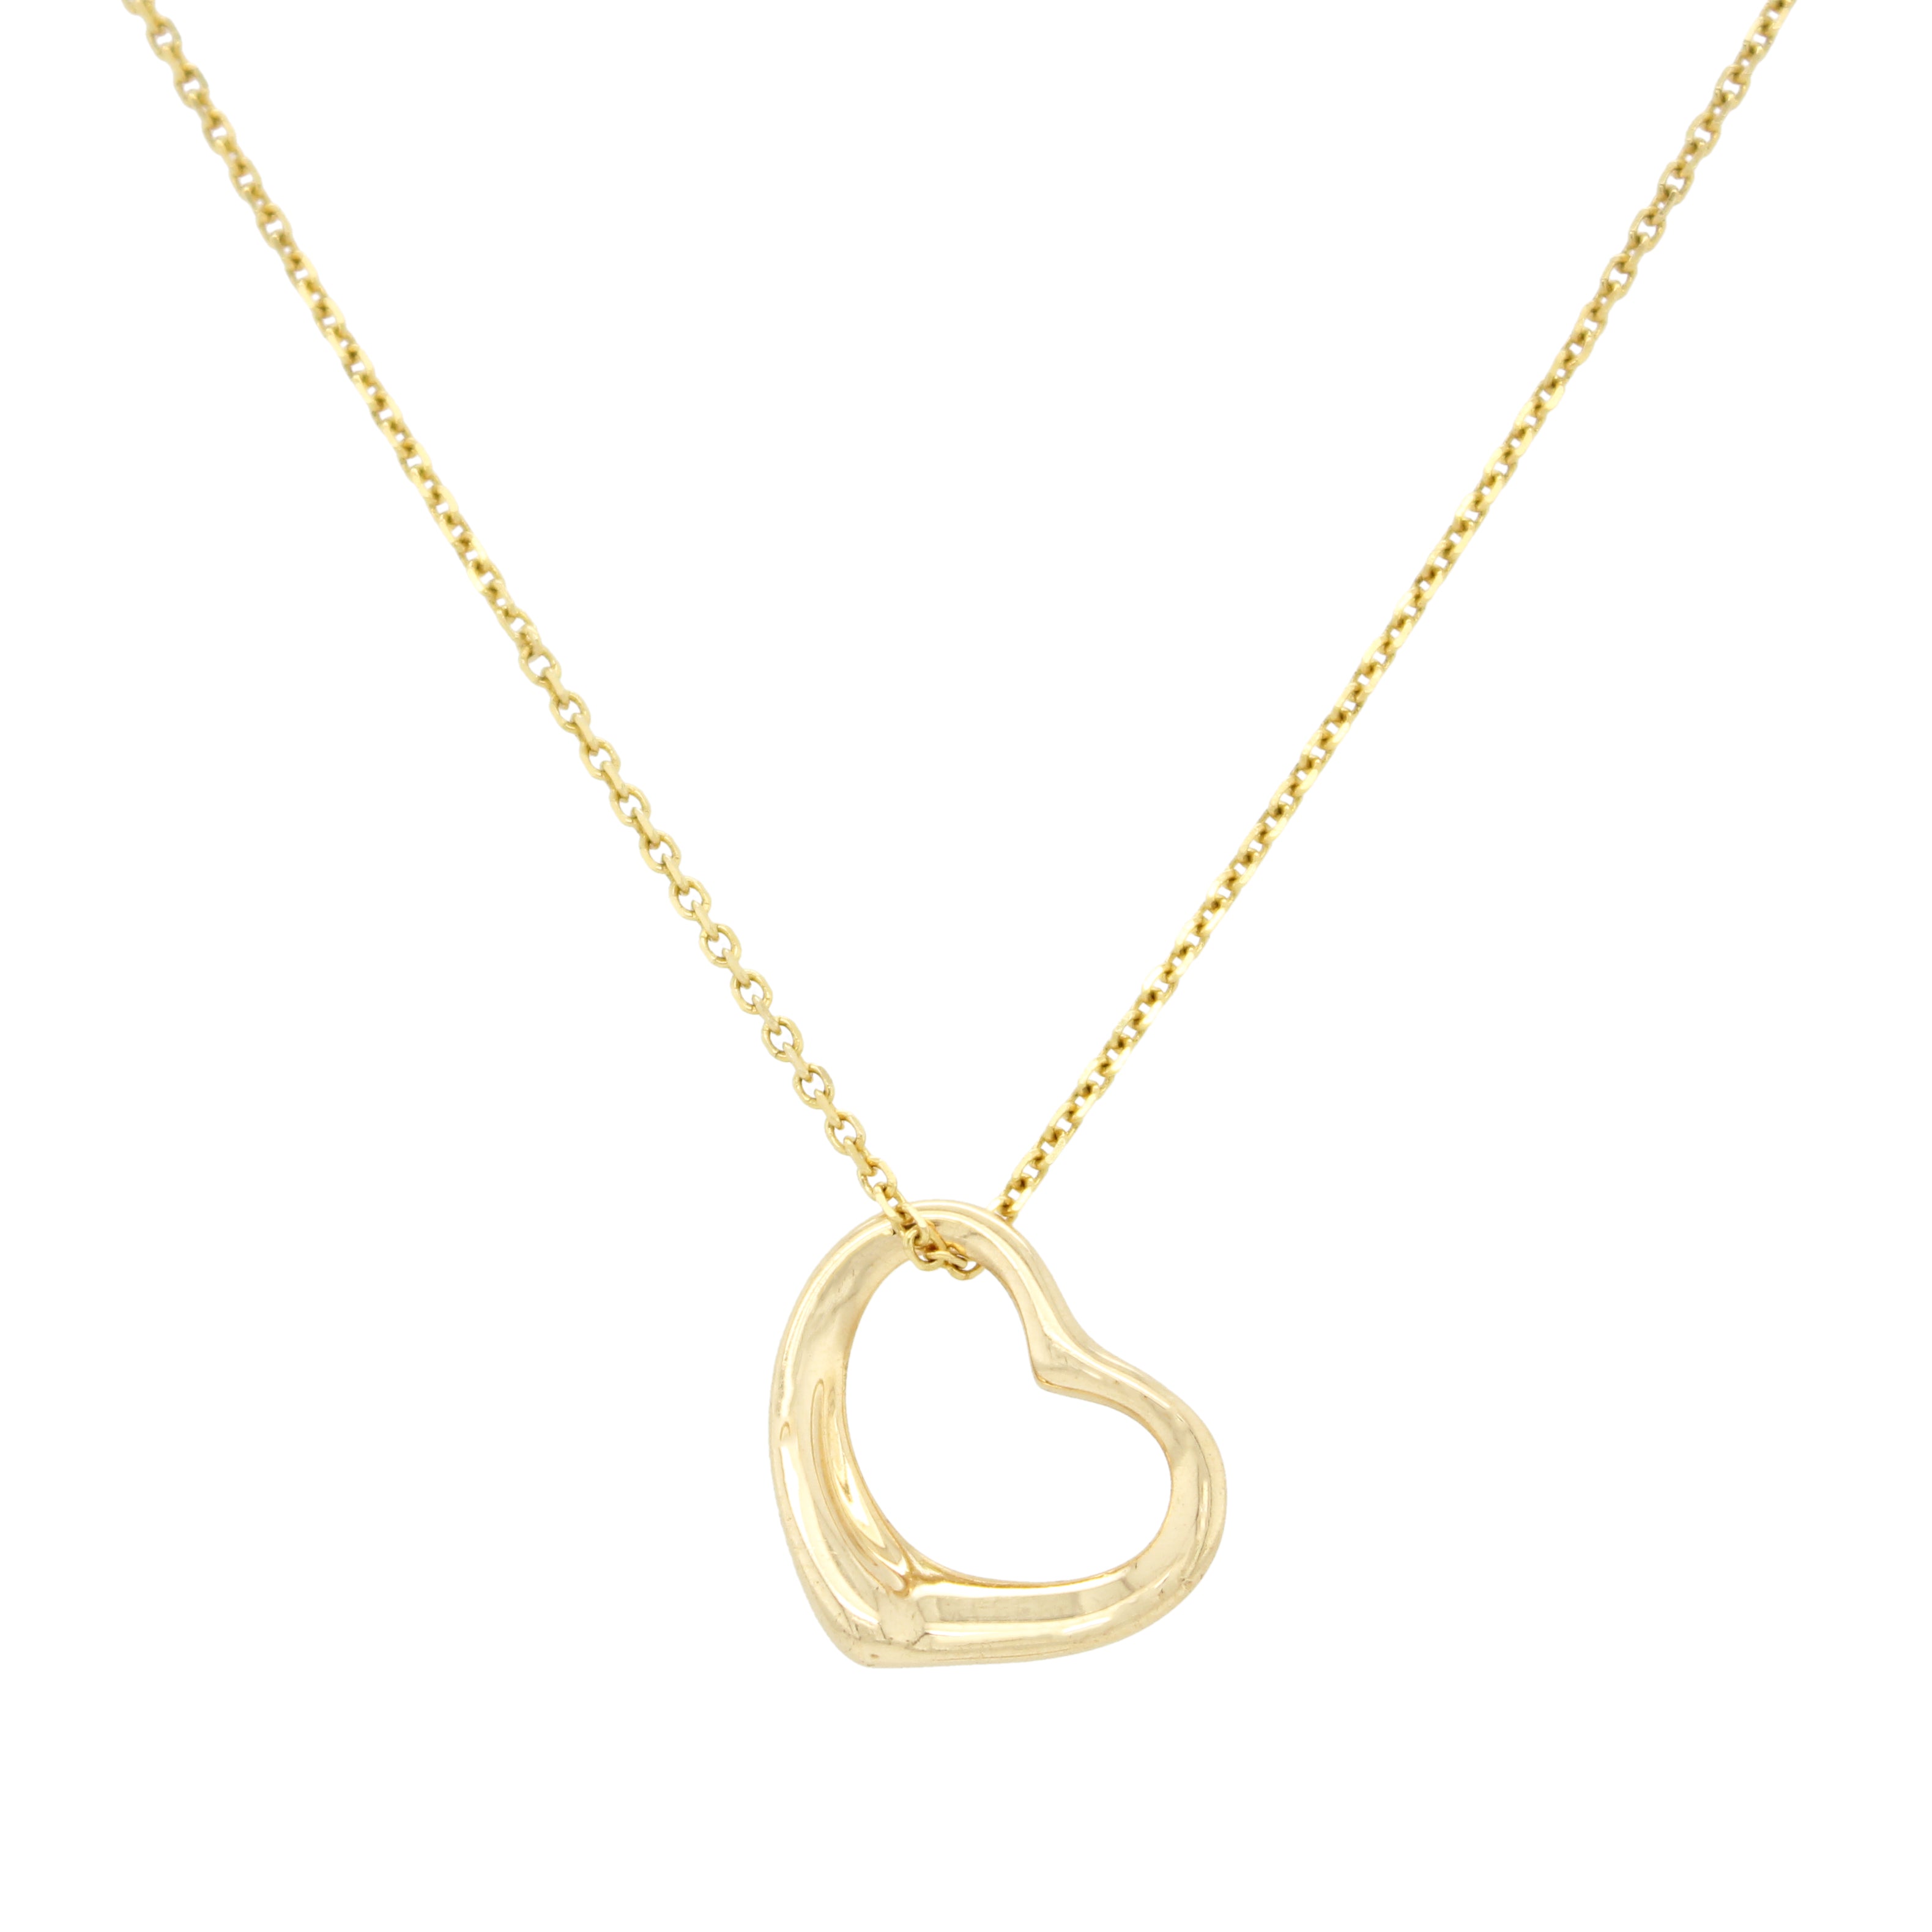 Tiffany & Co. 18K Yellow Gold Heart Lock Pendant Necklace Tiffany & Co.